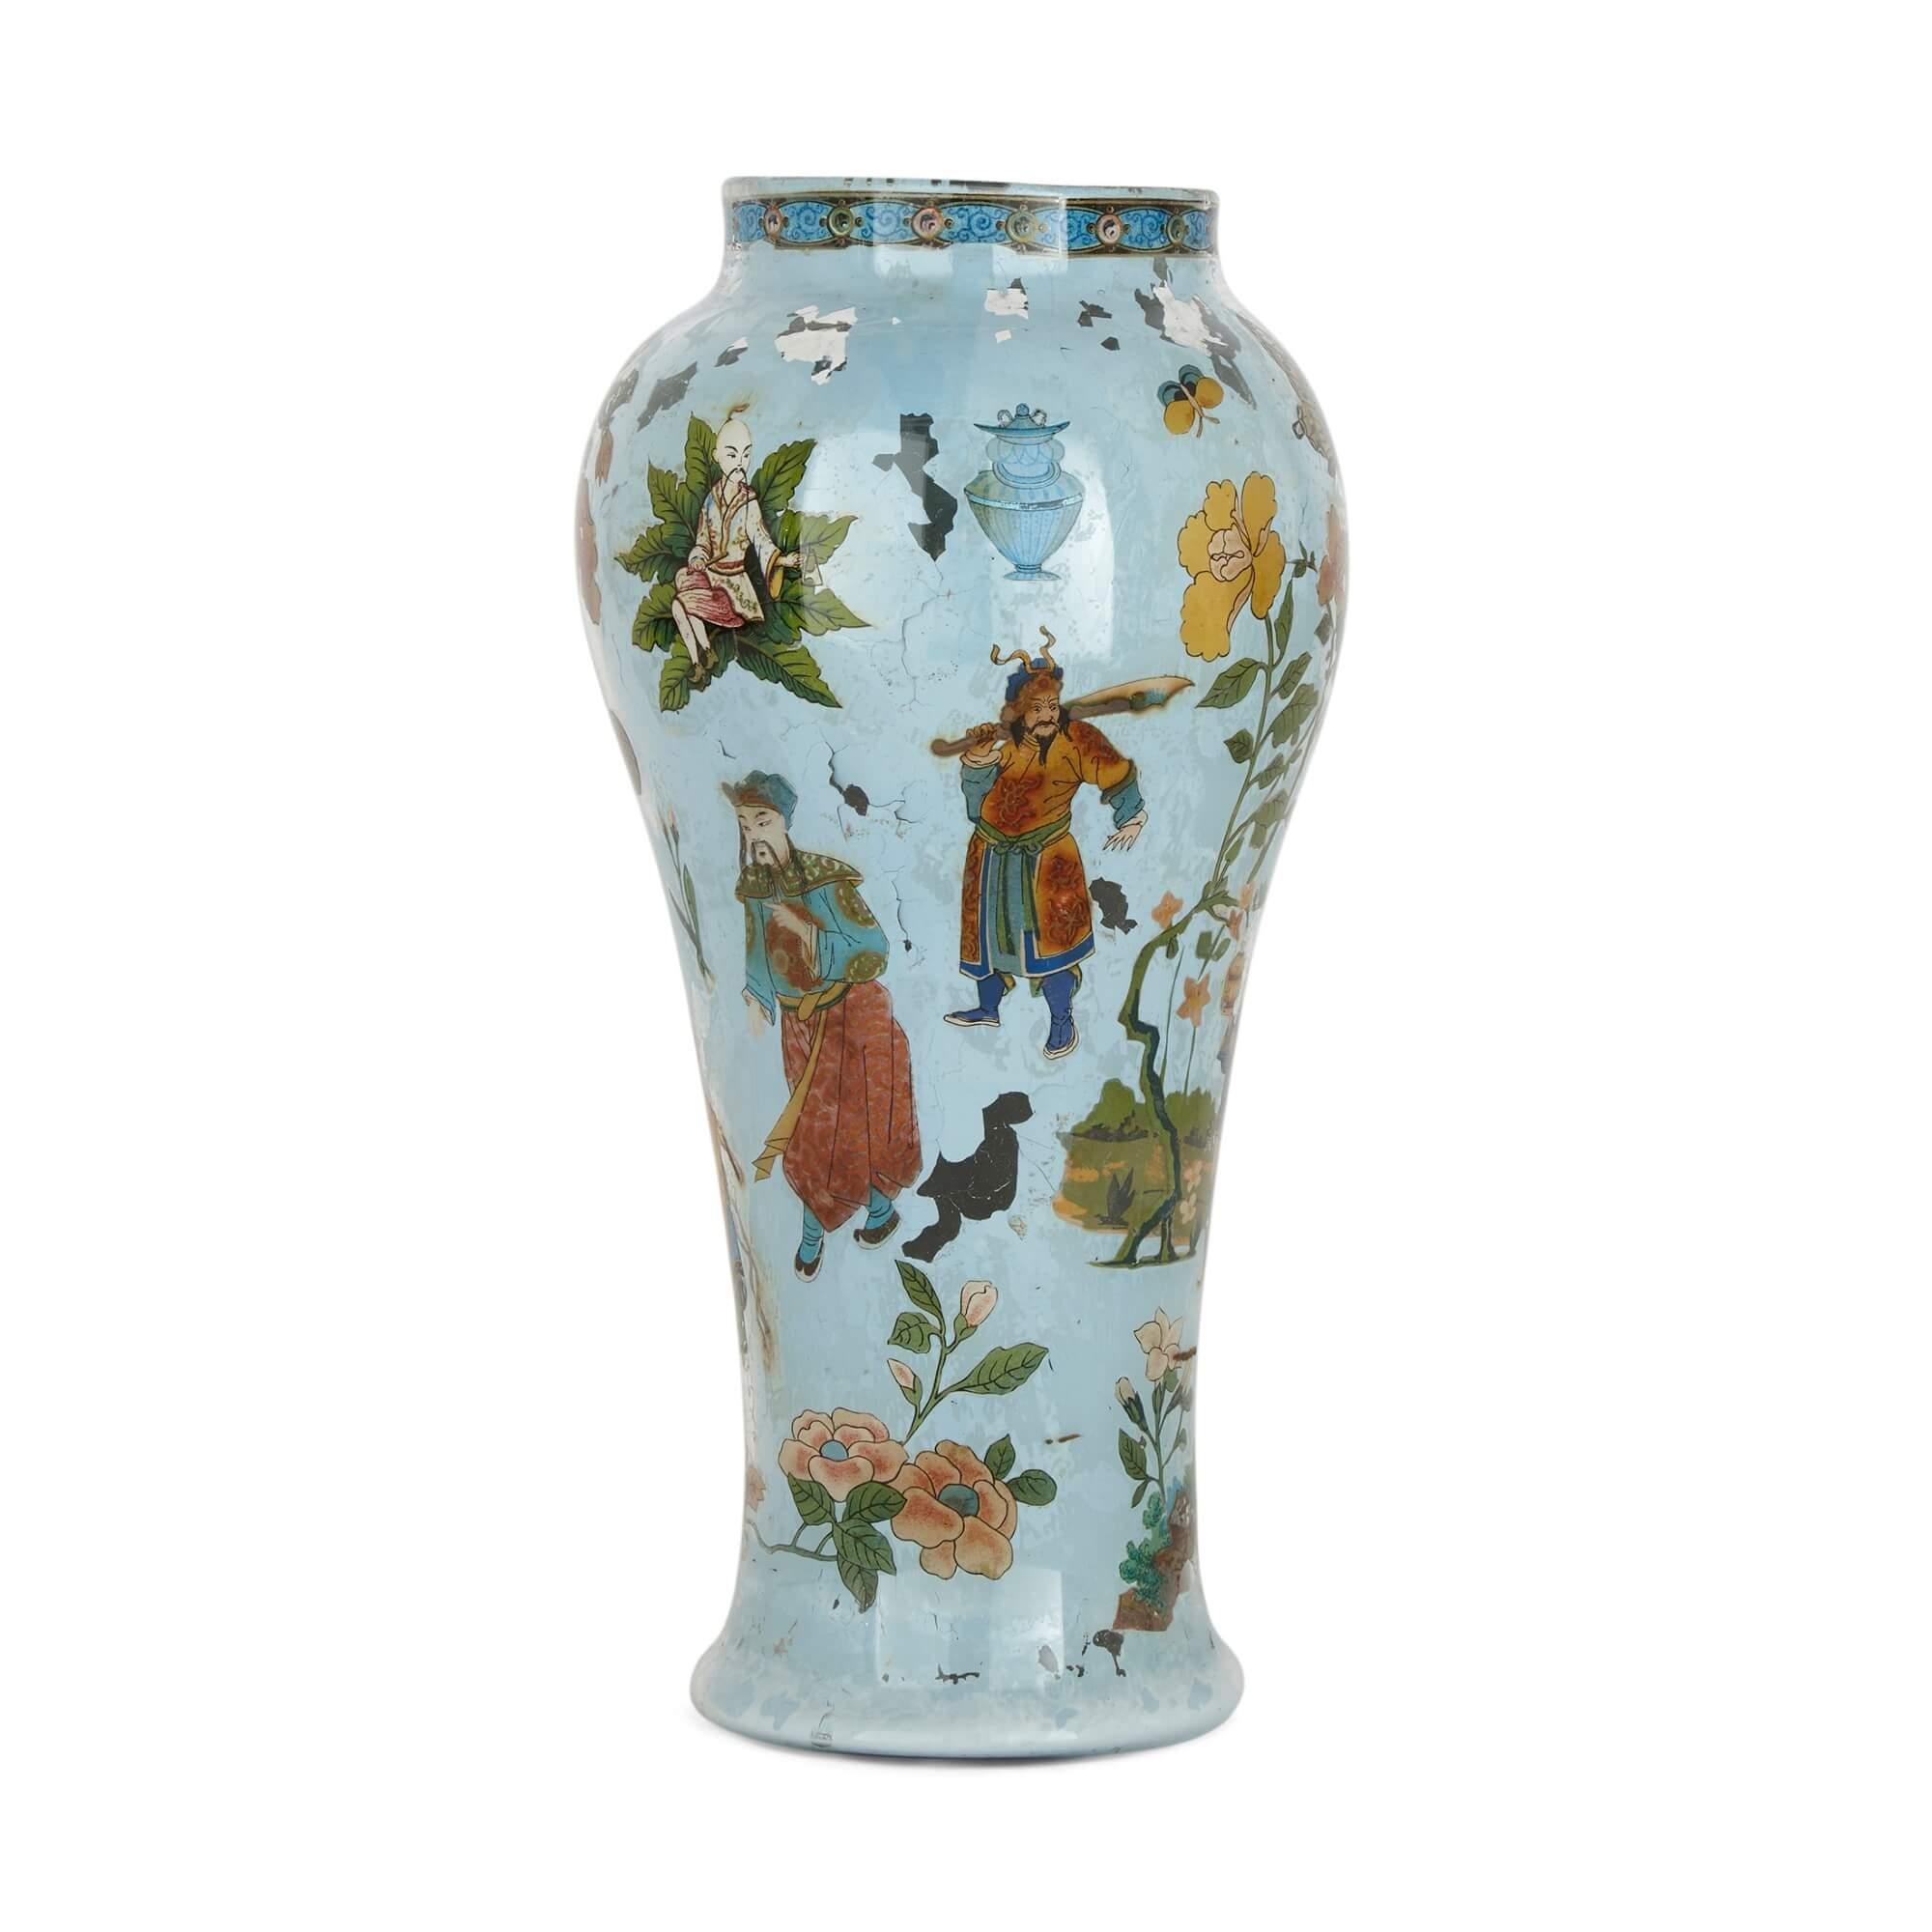 Dieses feine italienische Vasenpaar aus mundgeblasenem Glas im beliebten Chinoiserie-Stil des 18. Jahrhunderts zeichnet sich durch seine länglichen, geschwungenen Körper aus. Die Vasen sind ganzflächig mit Blumen, Schmetterlingen, Blättern und